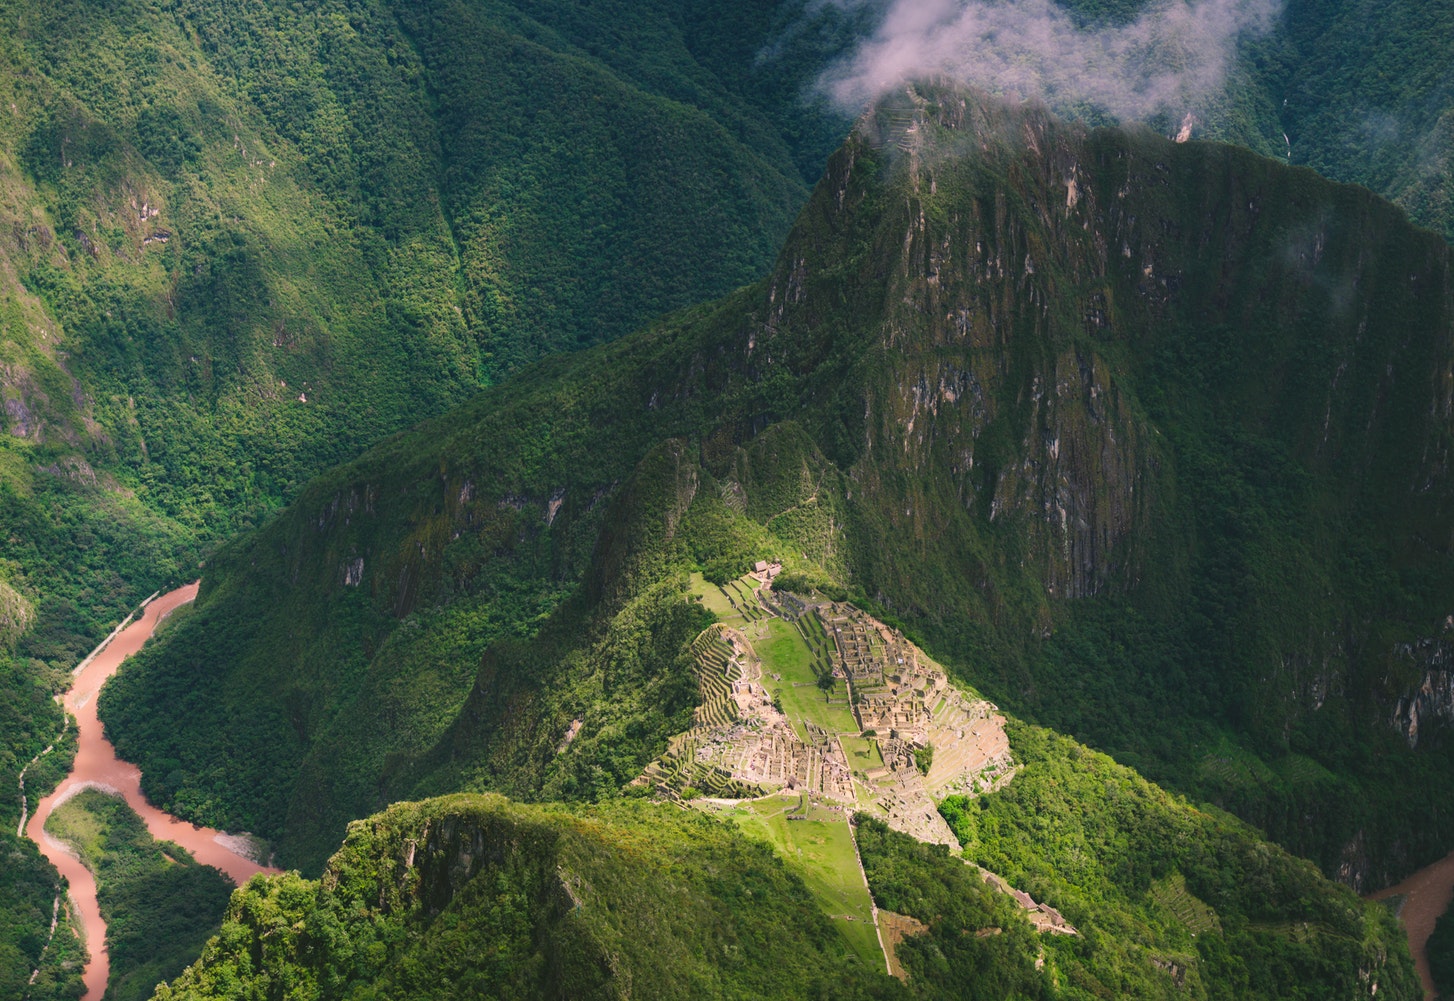 View of Machu Picchu in Peru